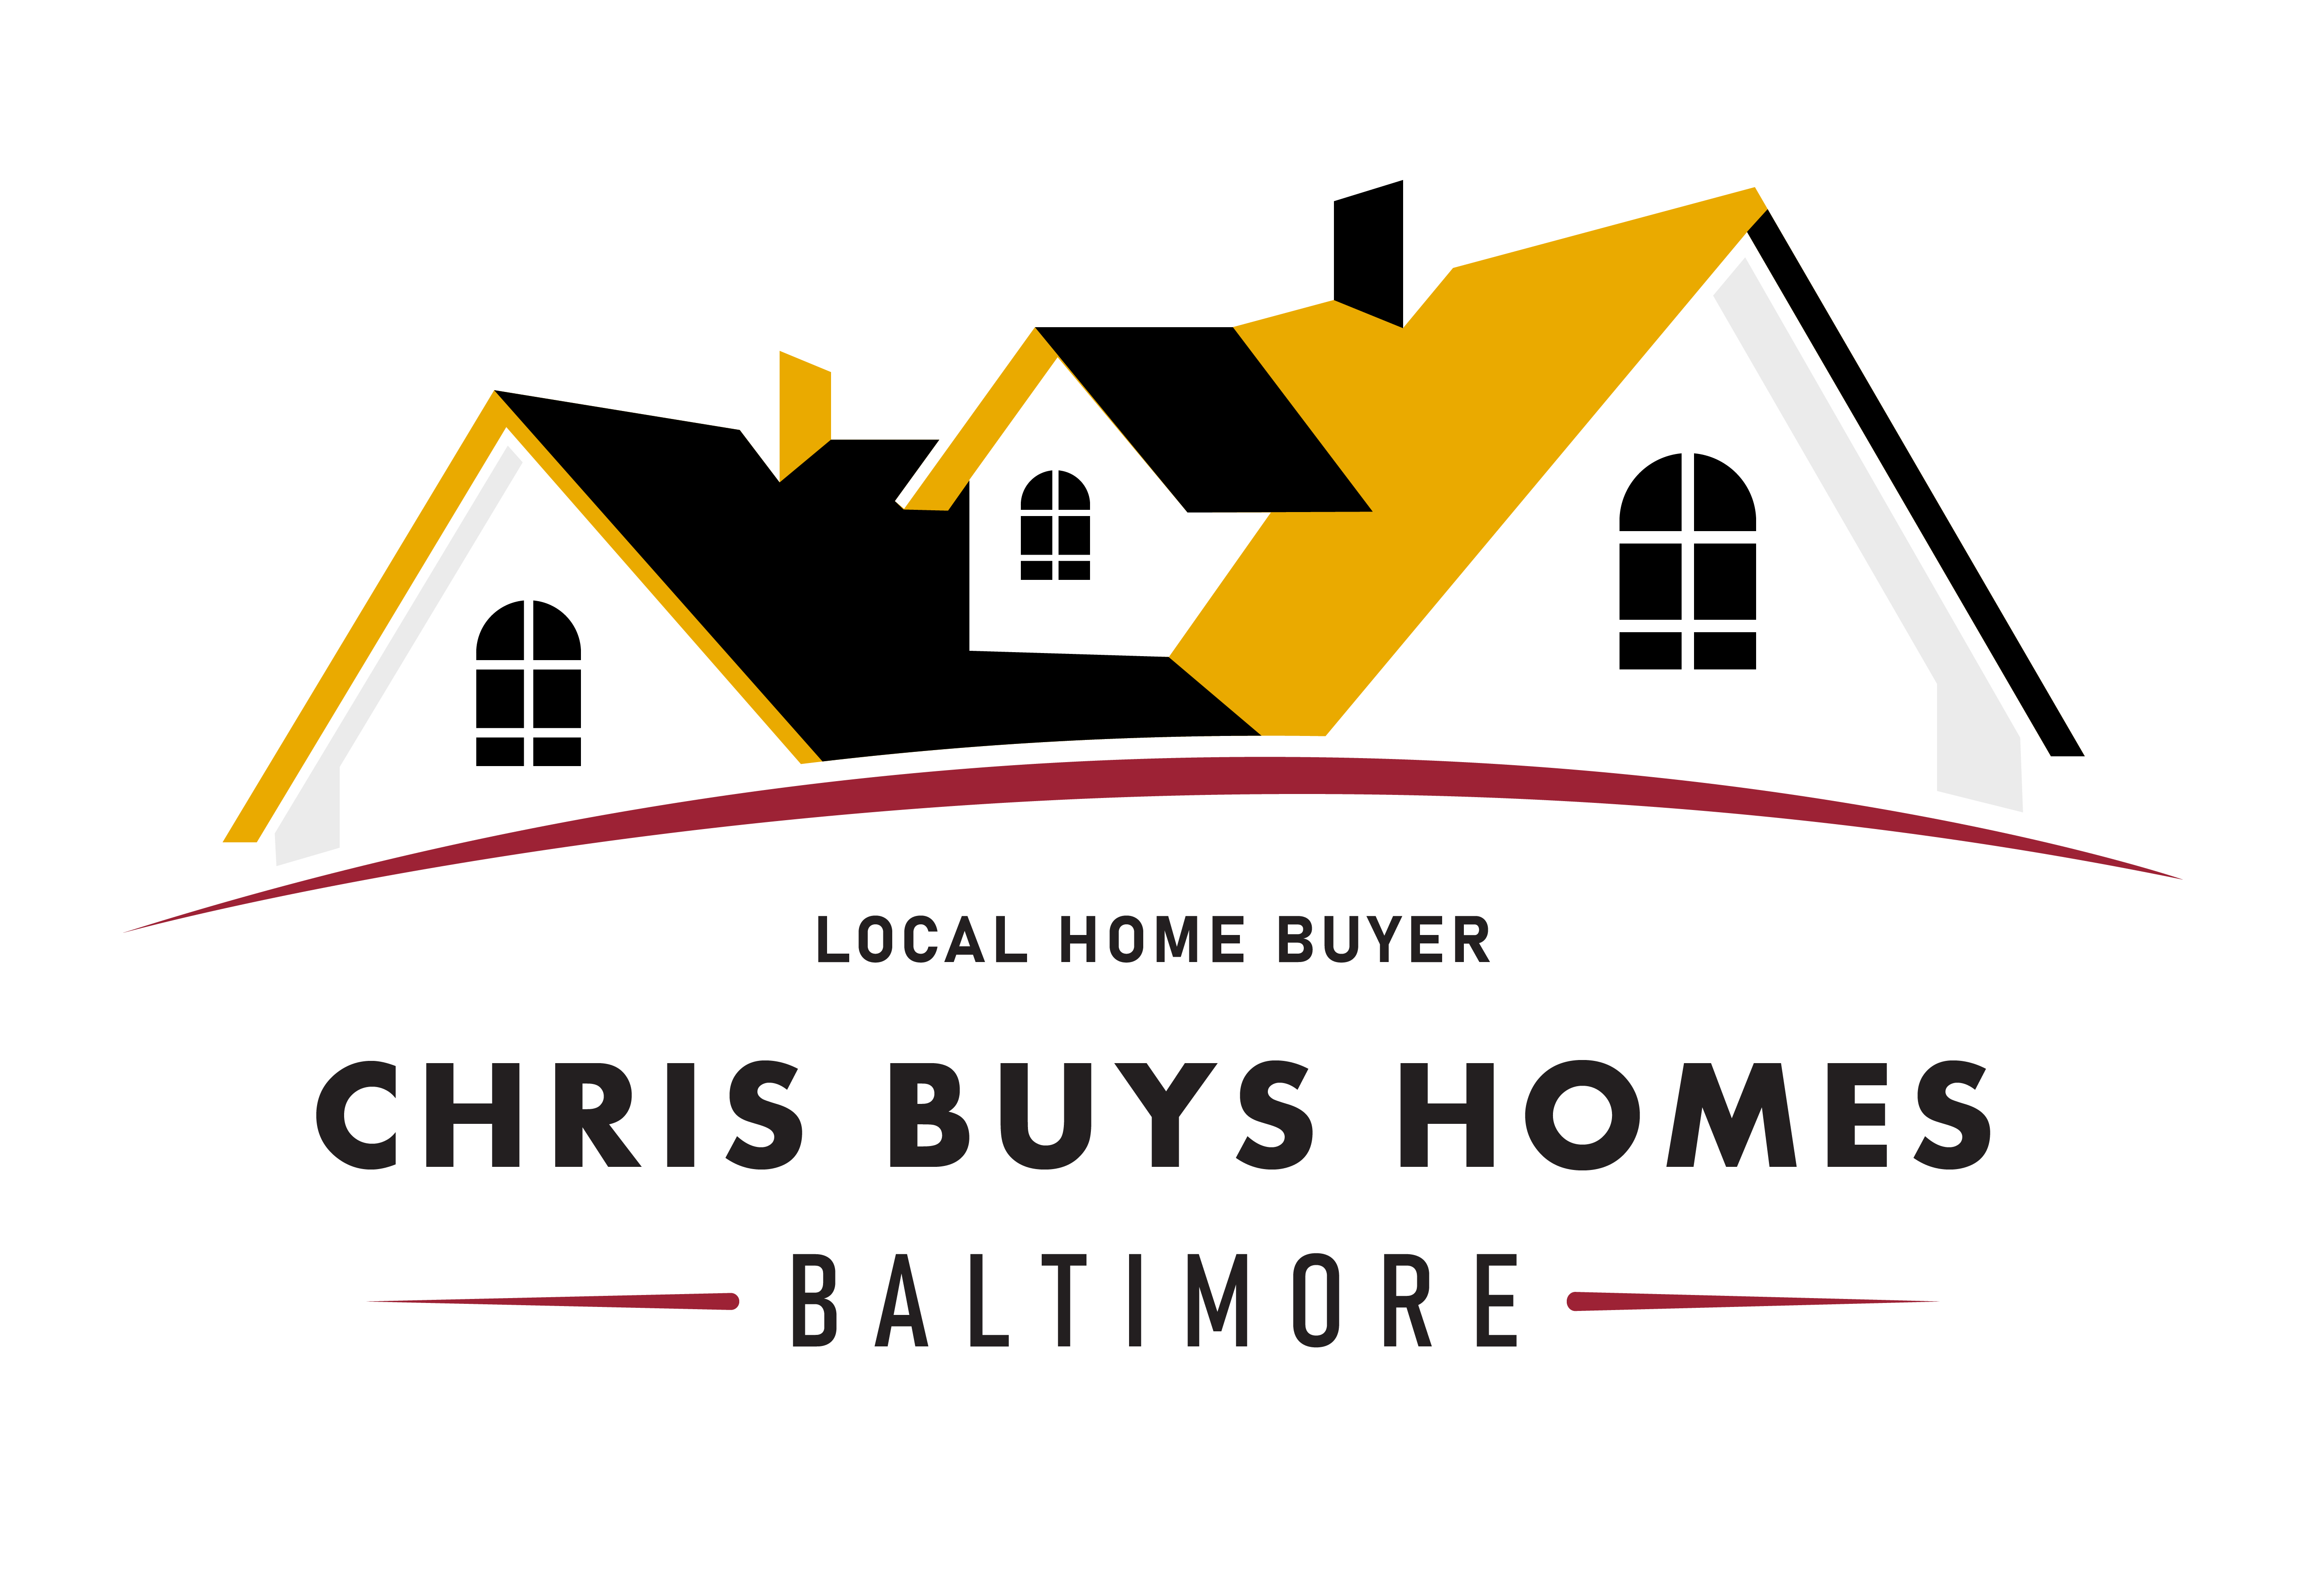 Chris Buys Homes in Baltimore logo